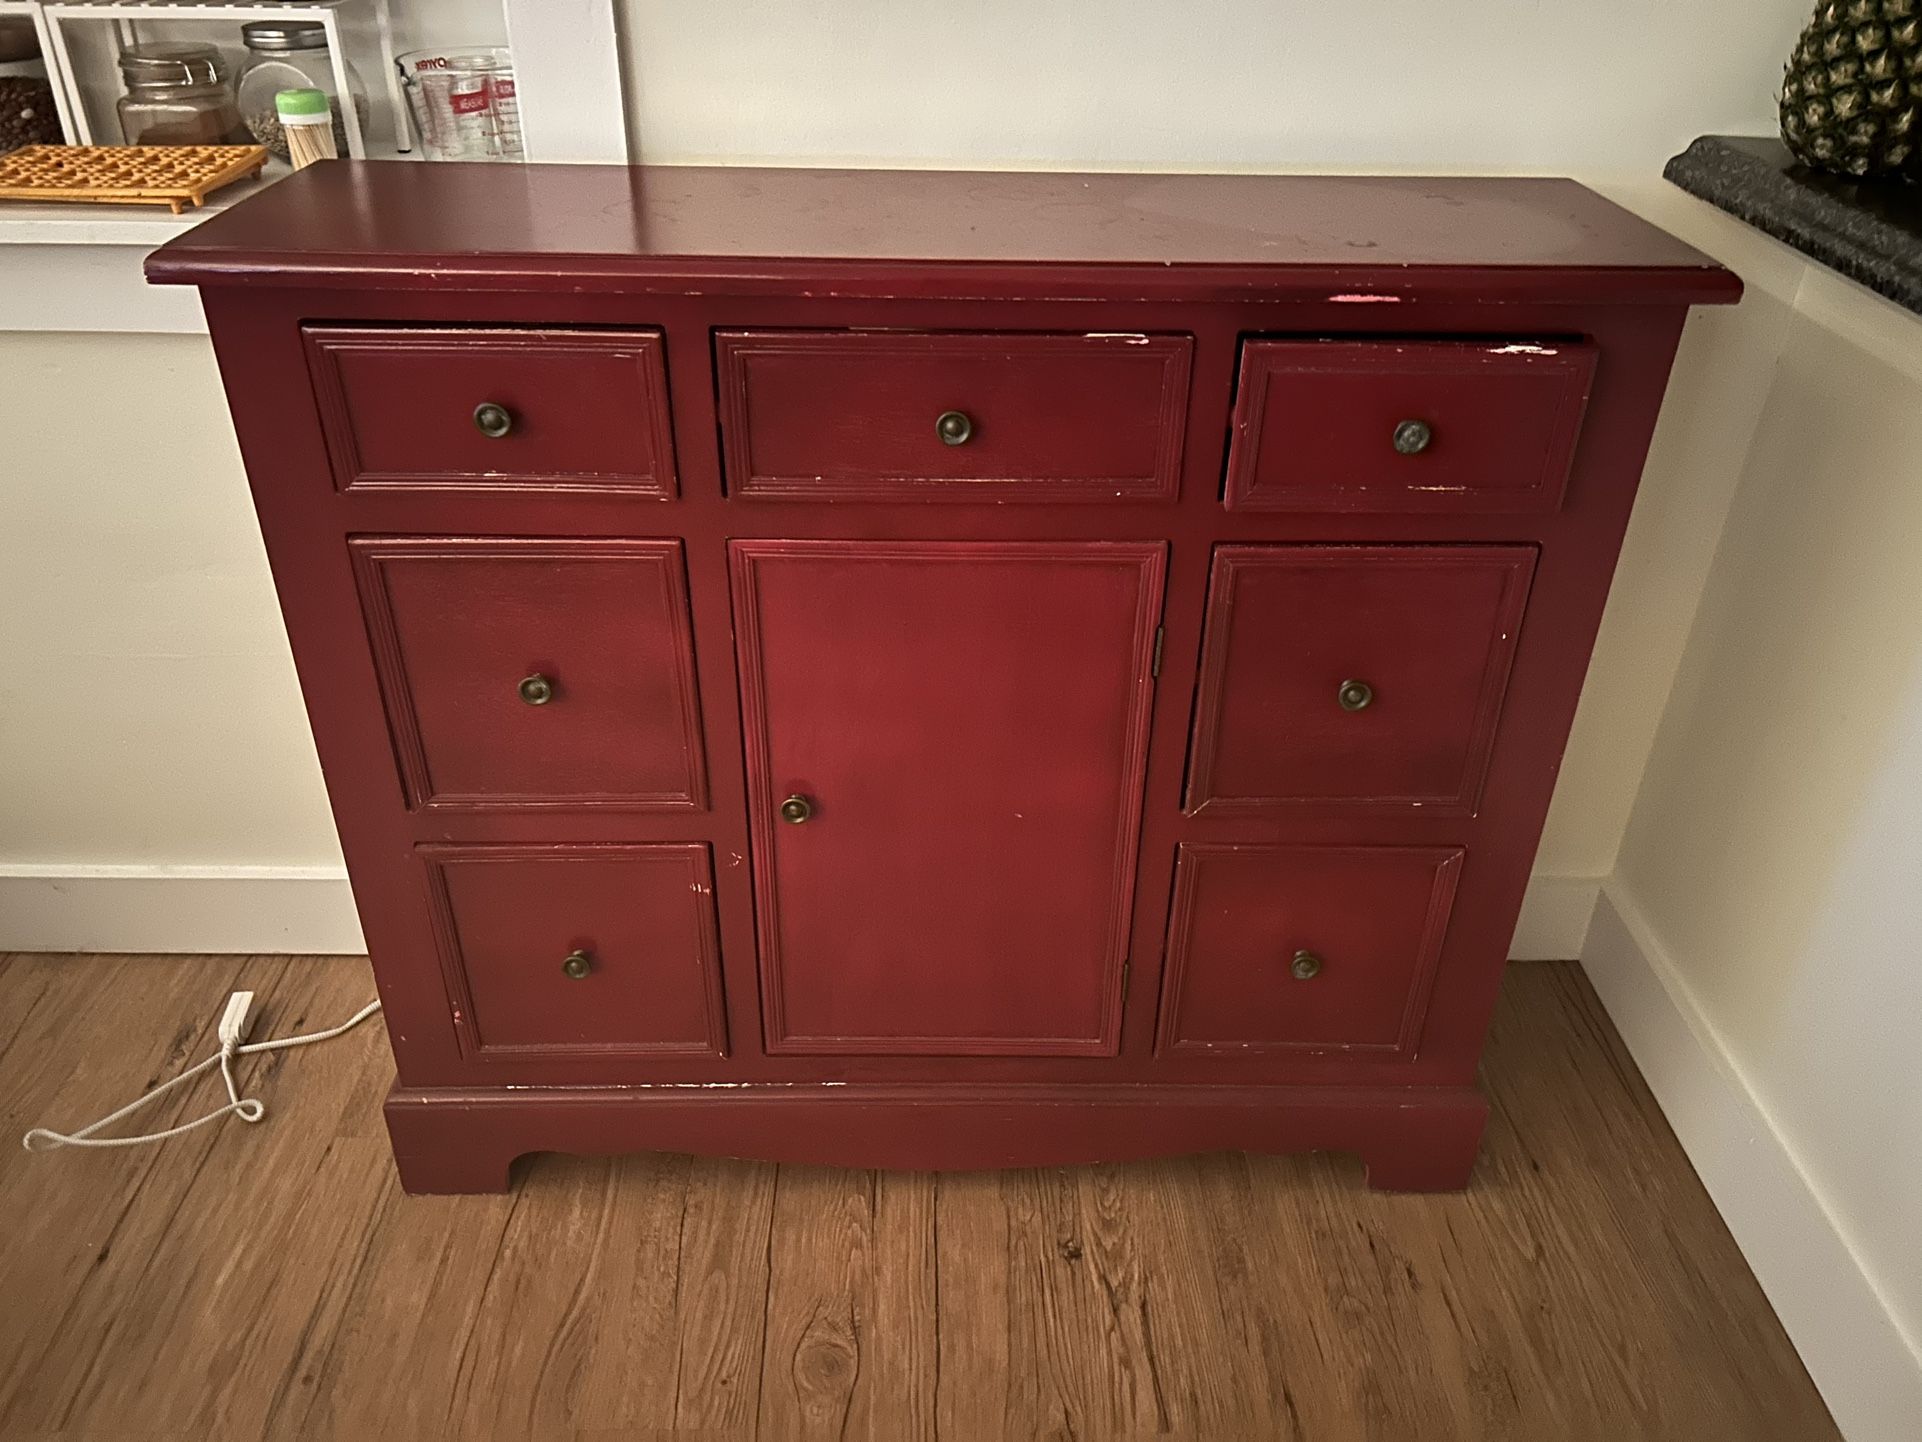 Red wooden dresser